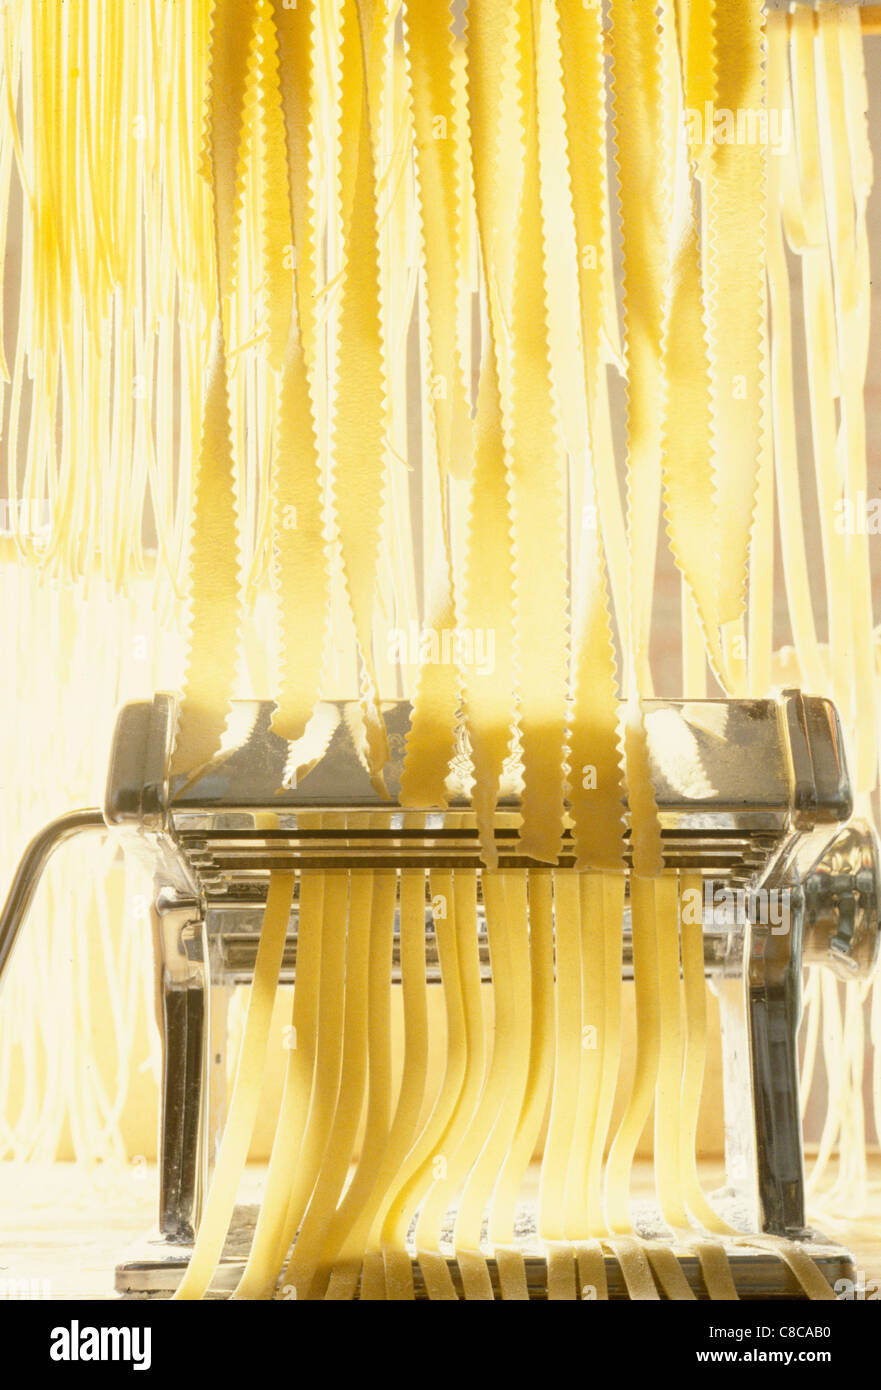 fresh-pasta-C8CAB0.jpg